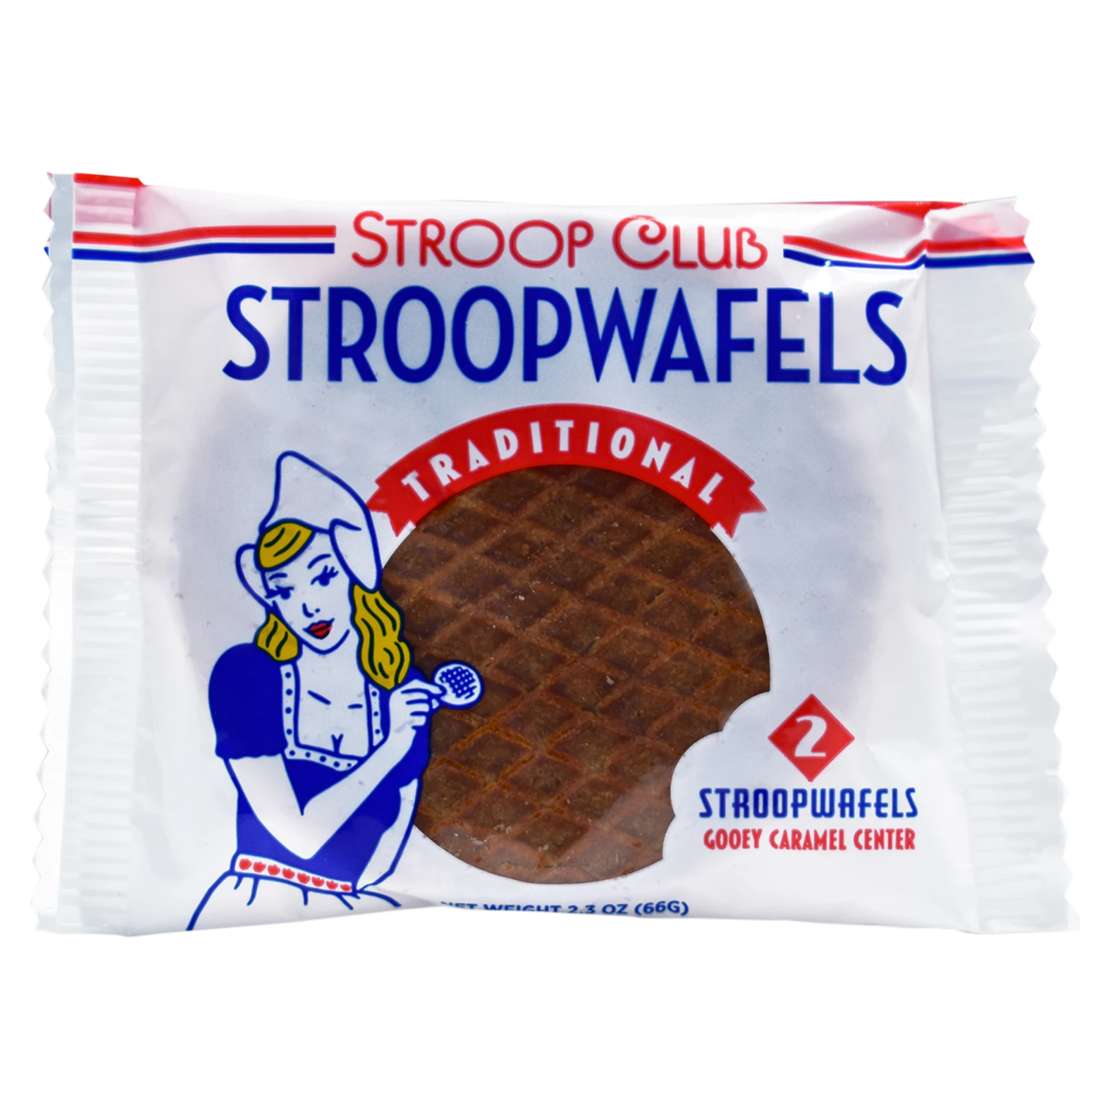 stroop club Stroopwaffles traditional